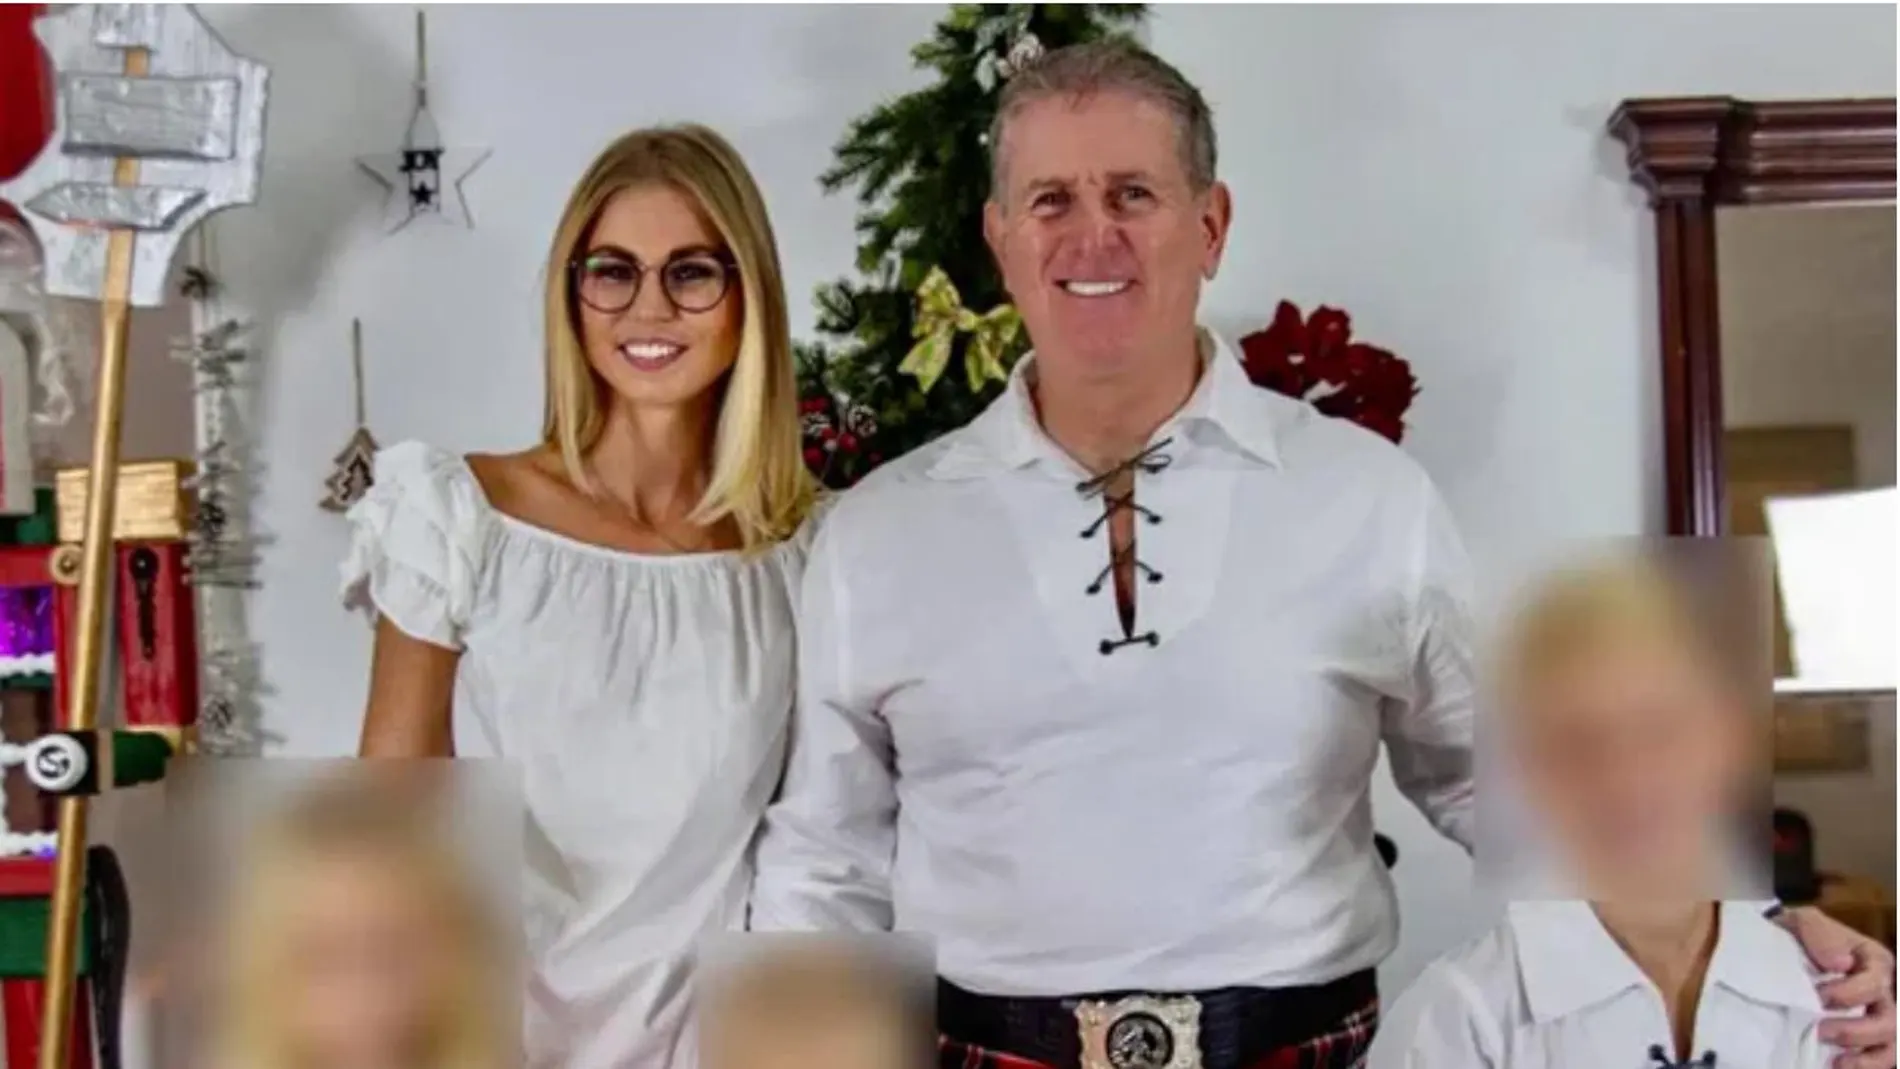 Karl Robb, el millonario escocés que compró Mi Gitana, con su familia en una imagen de sus redes sociales